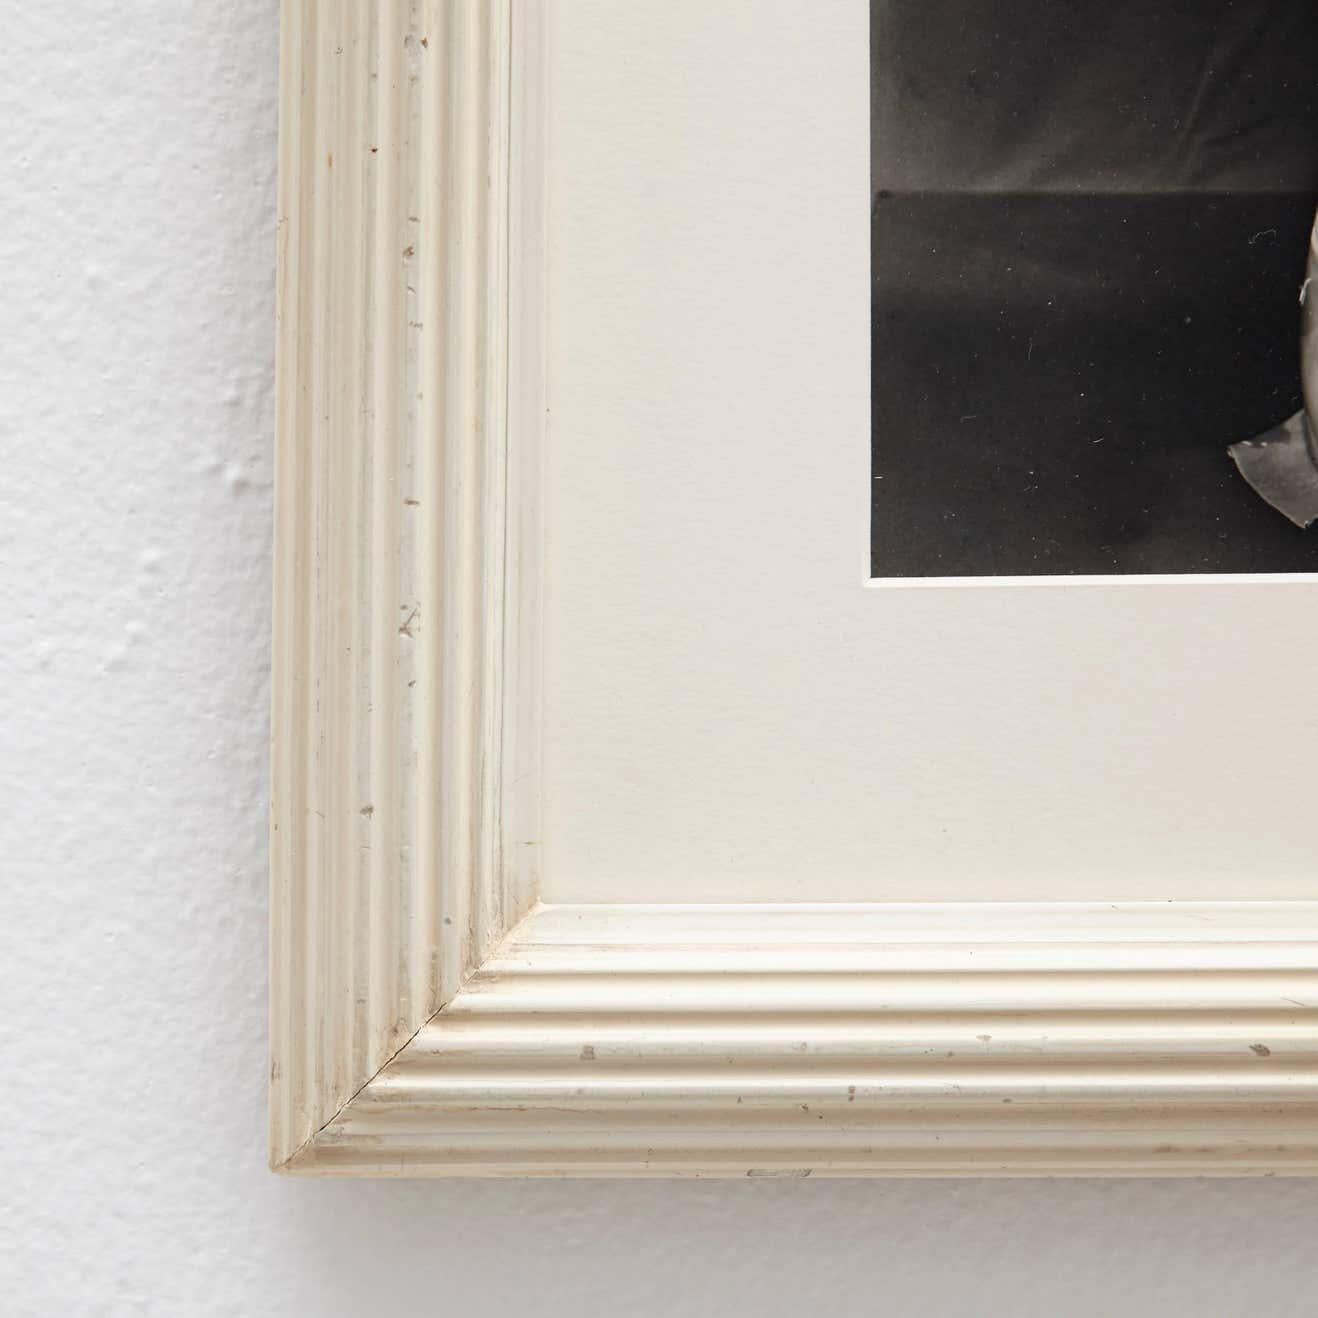 Fotografie von Man Ray, um 1930.

Ein posthumer Abzug vom Originalnegativ aus dem Jahr 1977 von Pierre Gassmann.

Gelatinesilberbromid, gerahmt in einem Rahmen aus dem 19. Jahrhundert mit Museumsglas.

Man Ray (1890-1976) war ein